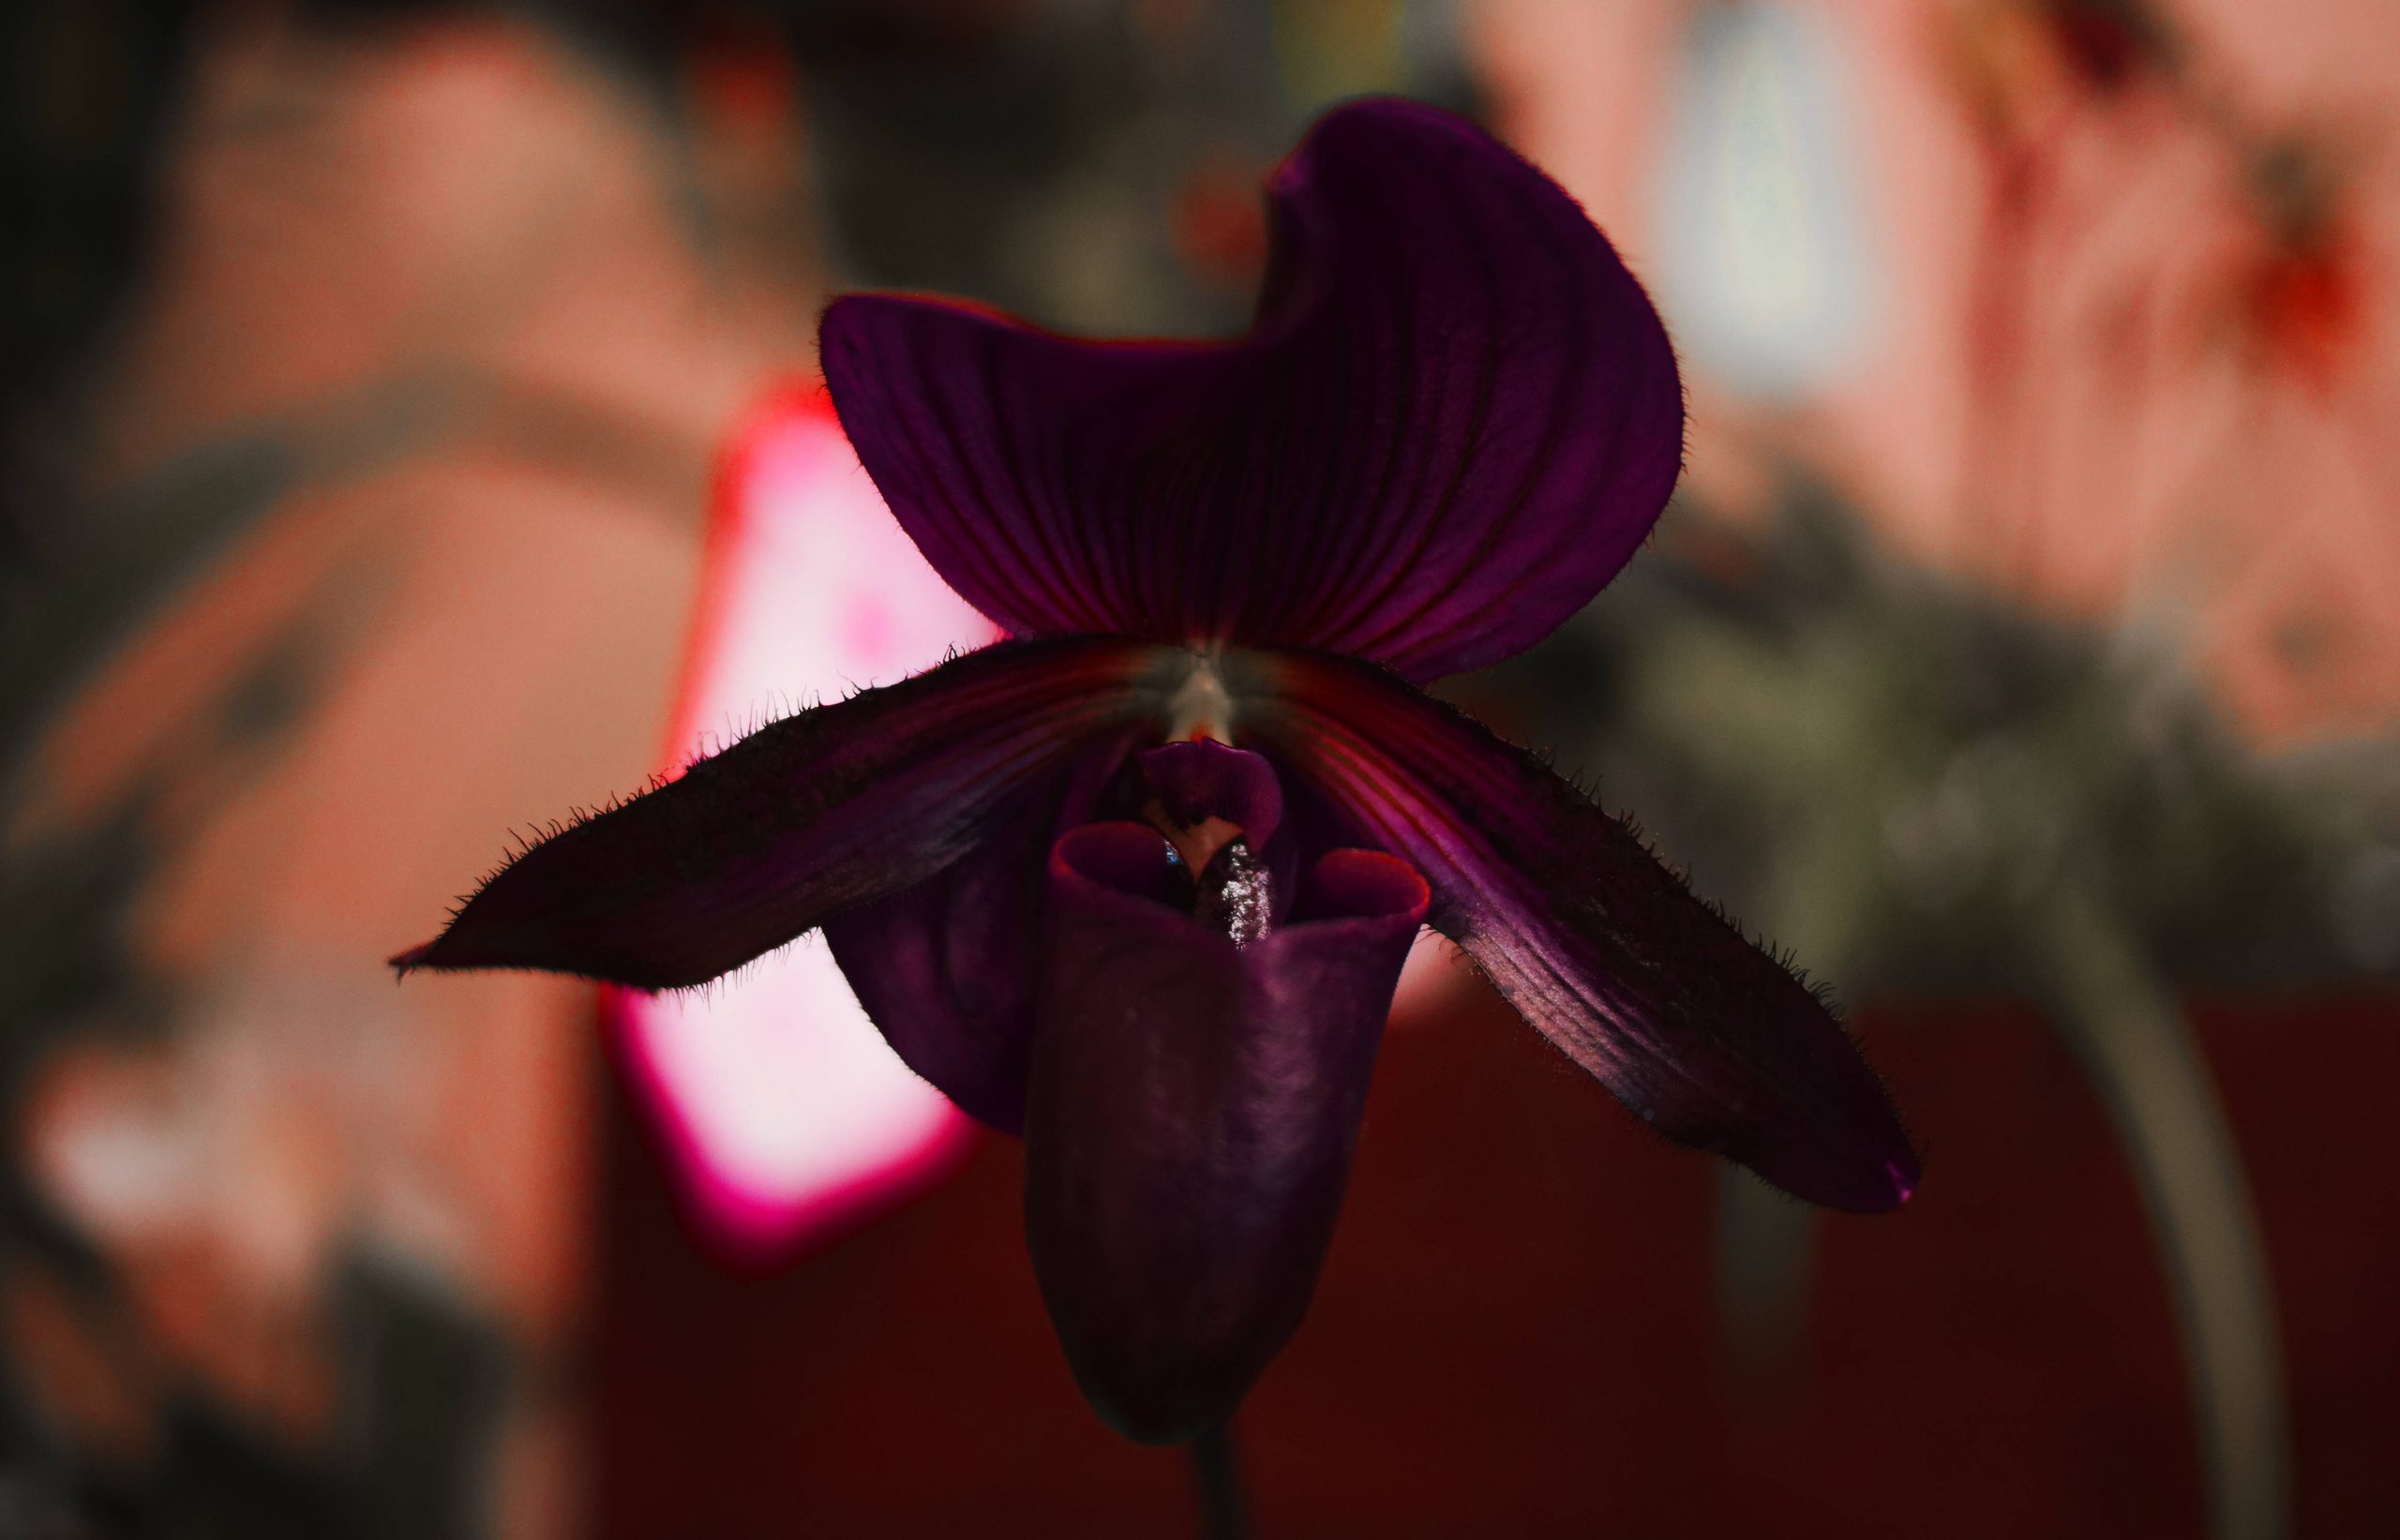 Il prodigio botanico dell’Orchidea Nera nella nuova Limited Edition Guerlain